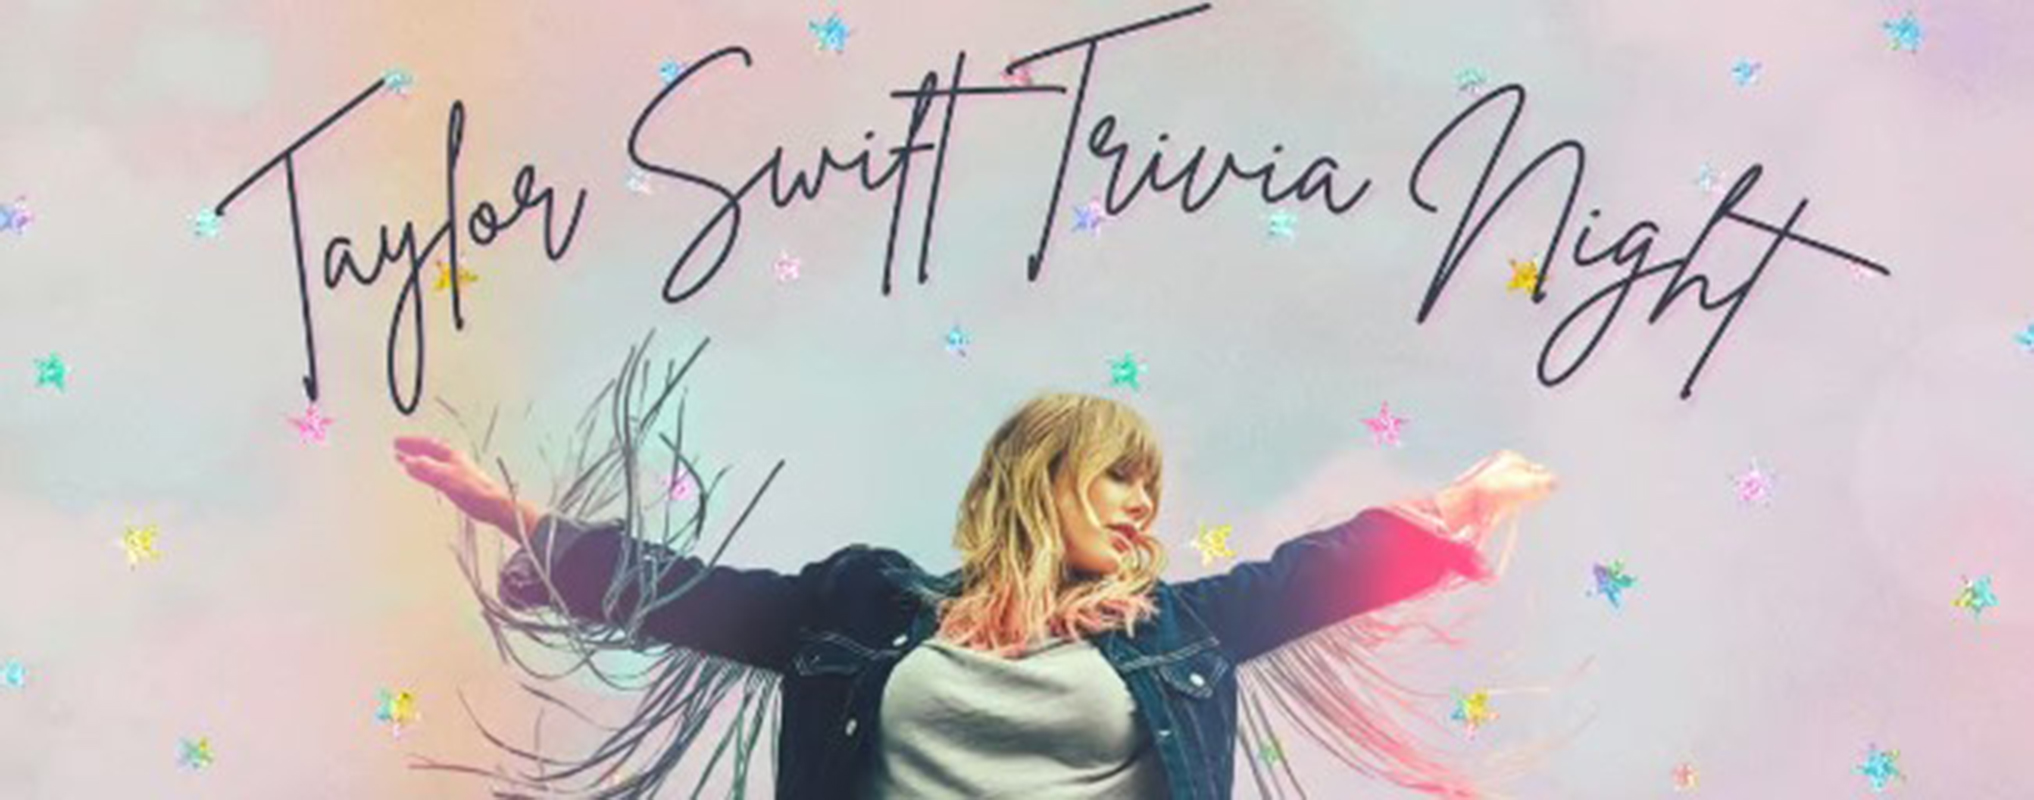 Taylor Swift Trivia!